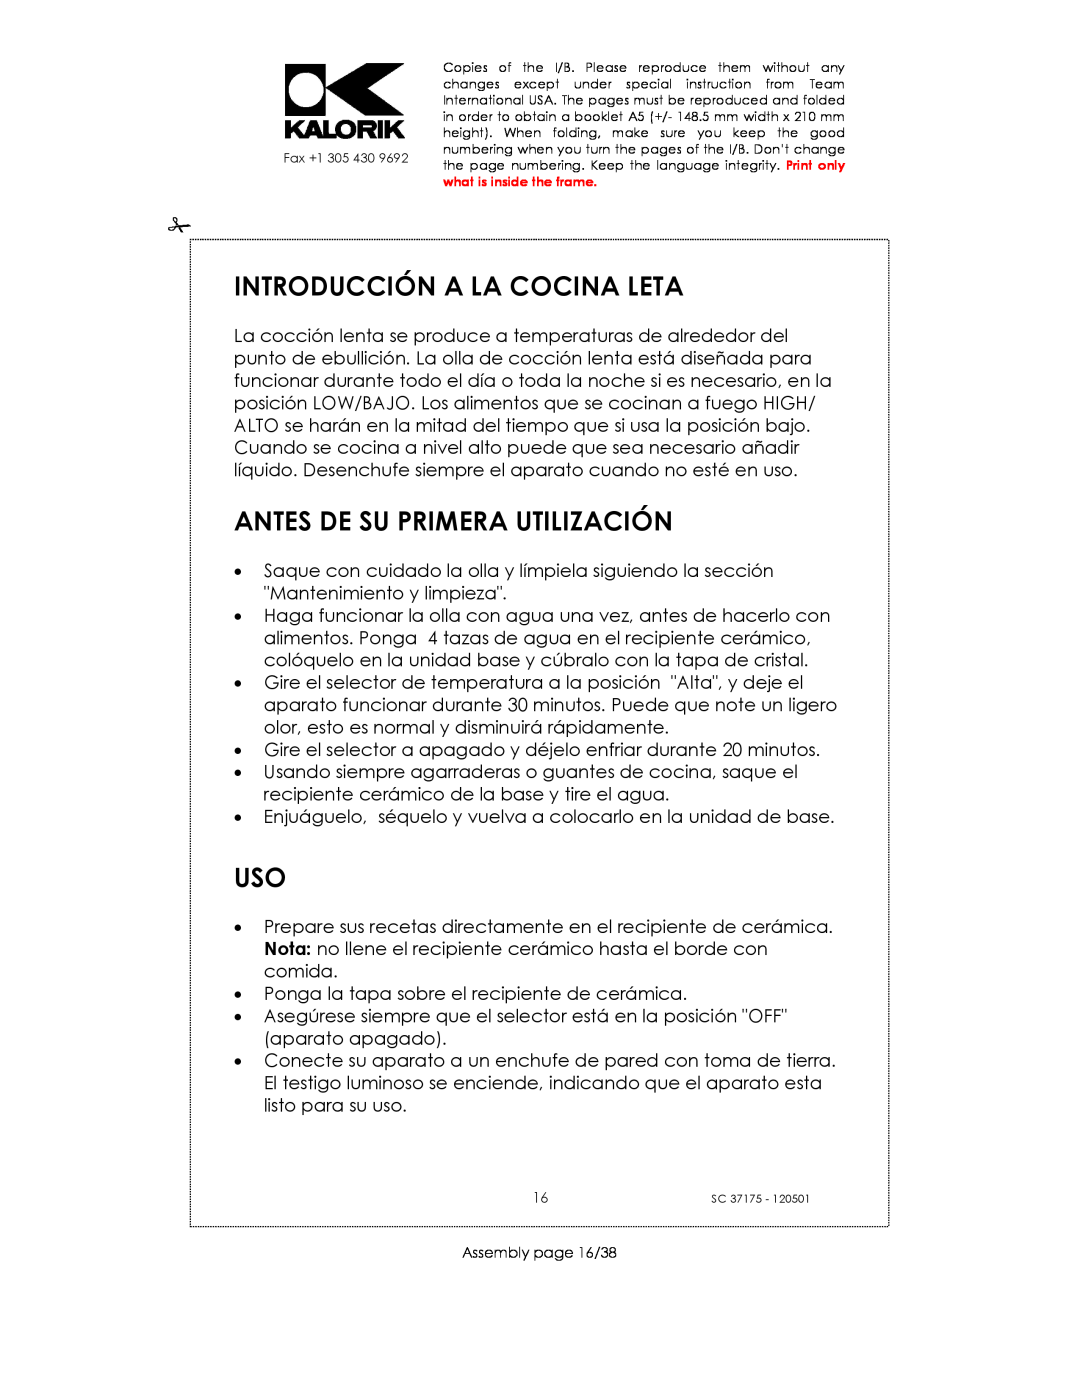 Kalorik SC 37175 manual Introducción A La Cocina Leta, Antes De Su Primera Utilización 